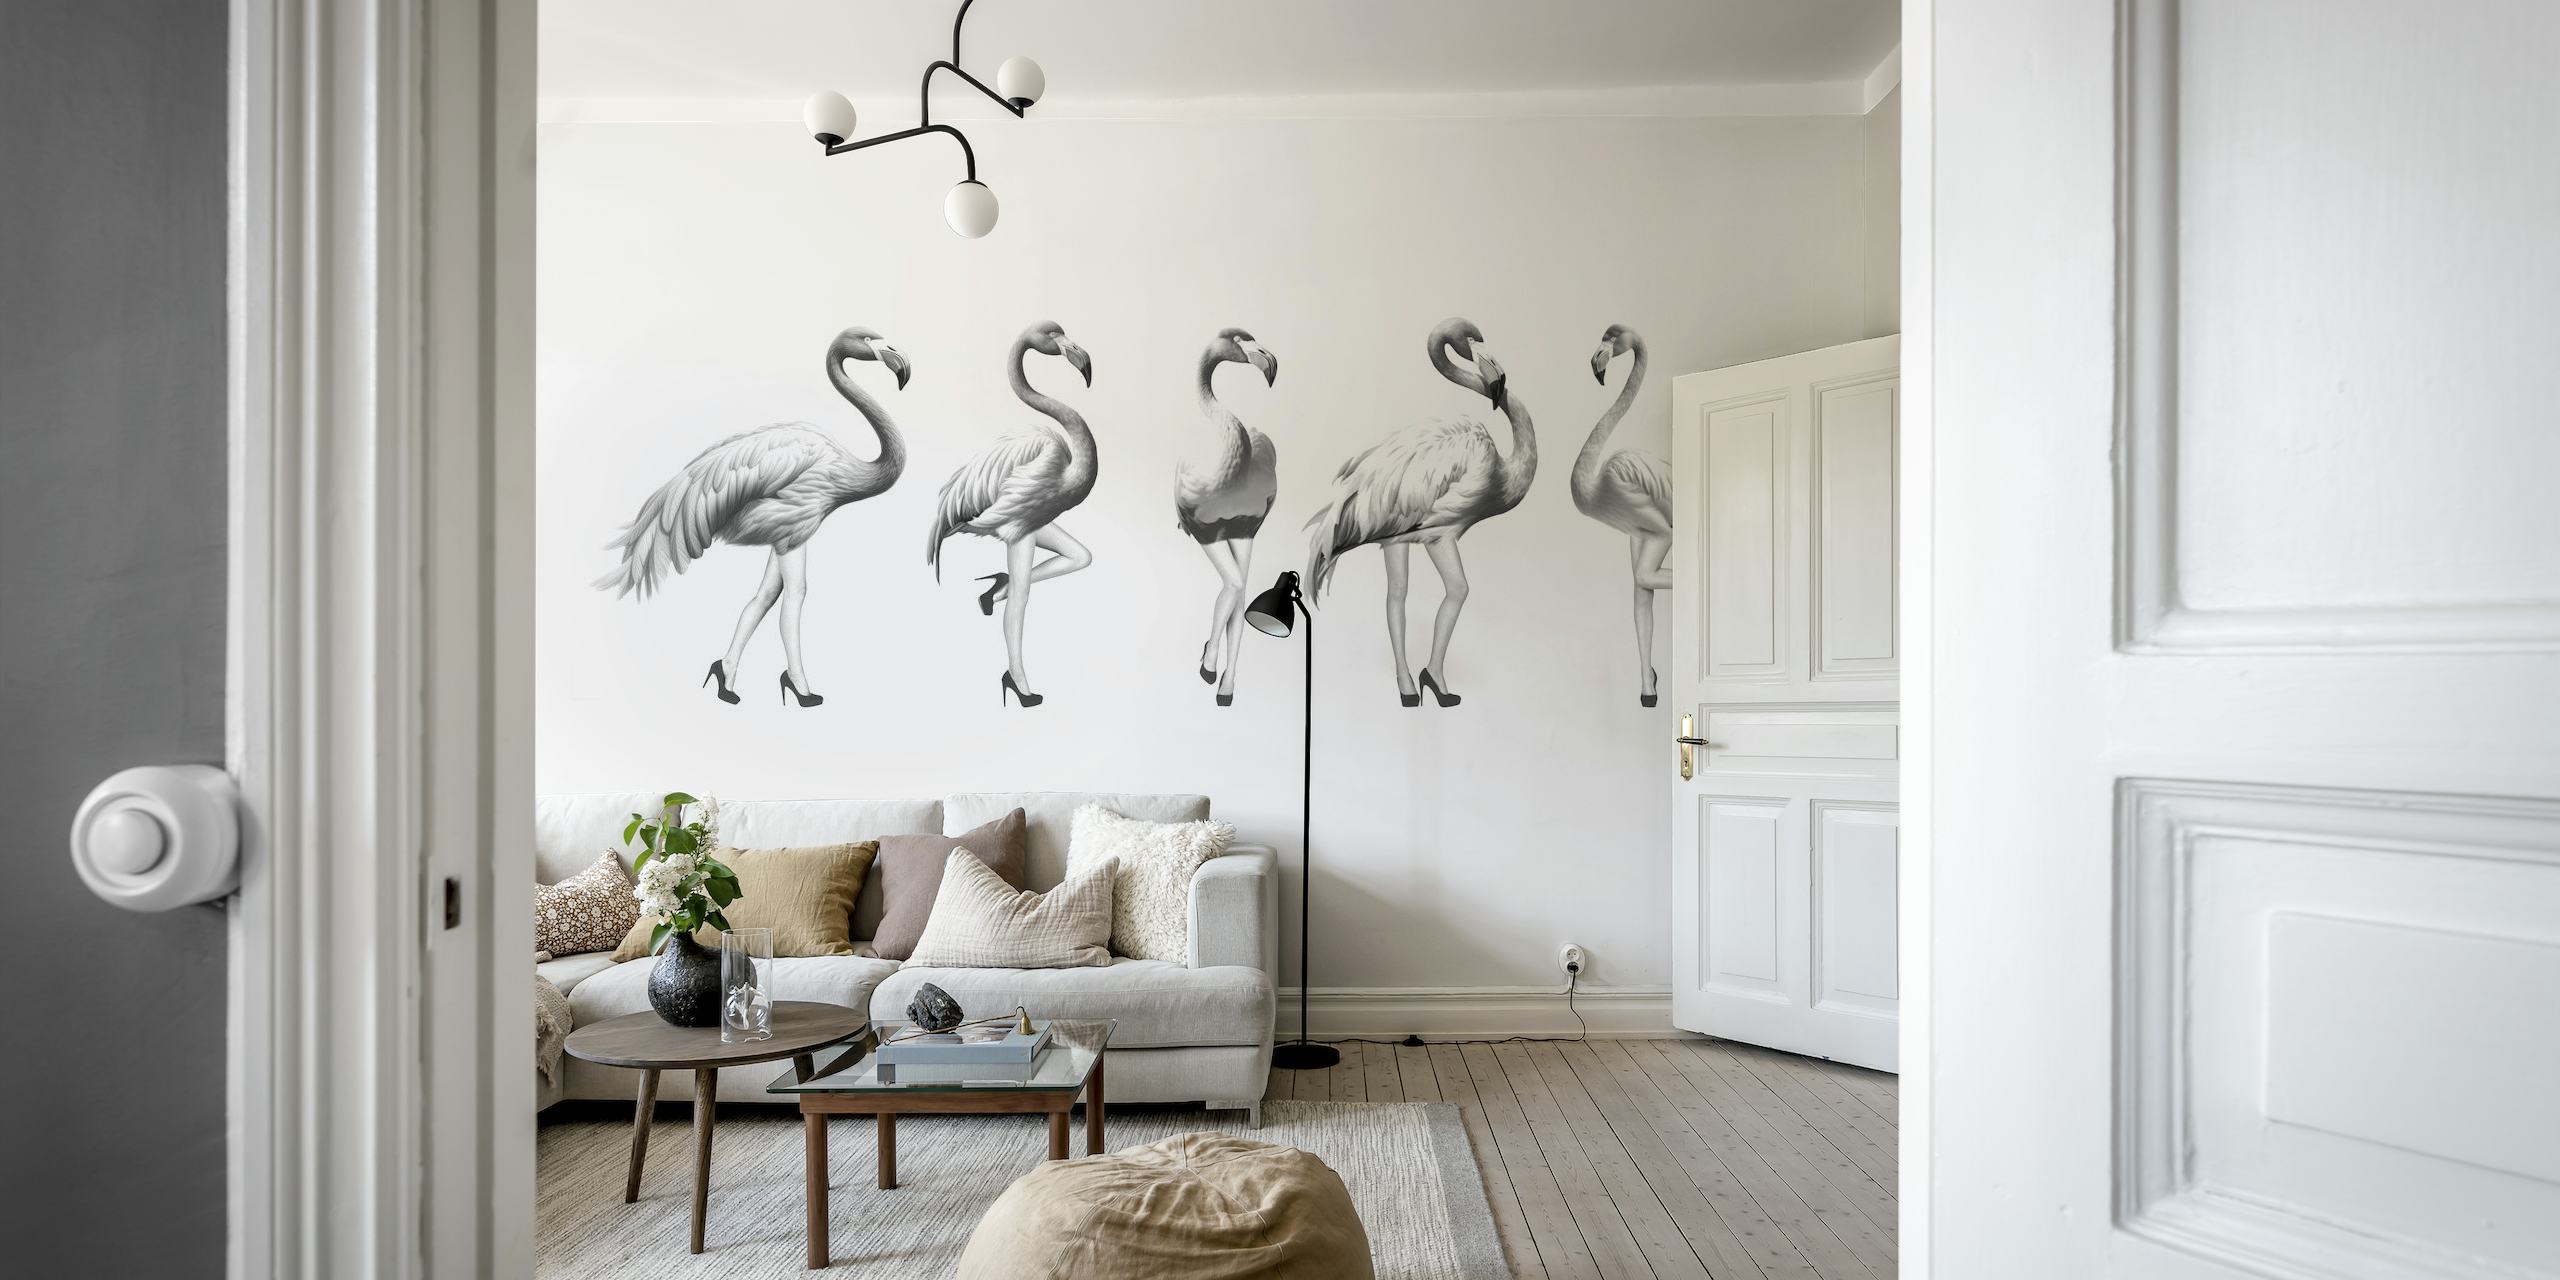 Schwarz-weiße Fototapete mit verspielten Flamingos in Grautönen